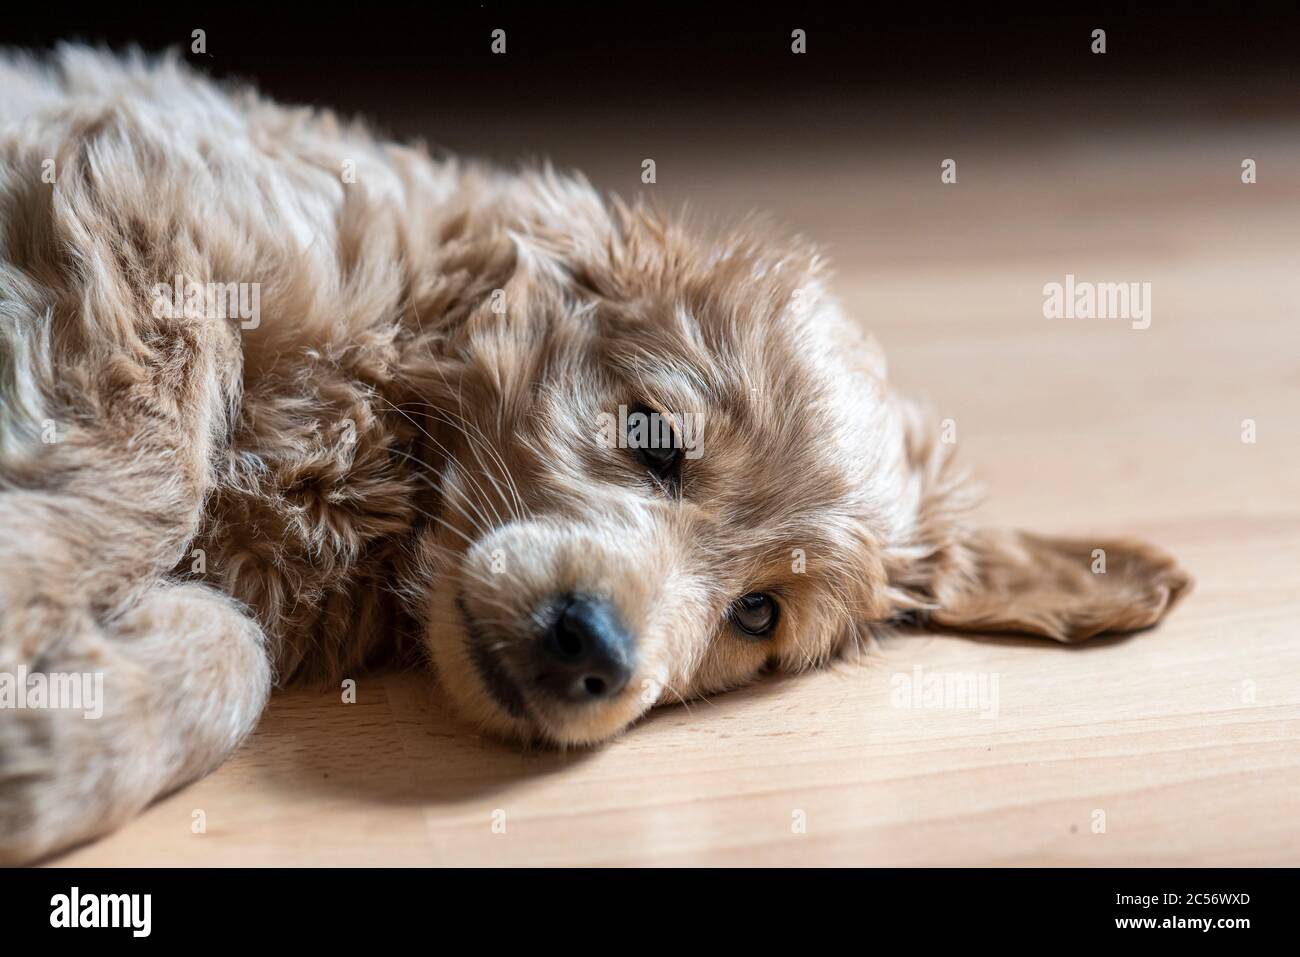 Un Mini Goldendoodle di 8 settimane (un mix di un retriever d'oro e un piccolo poodle) si trova su un pavimento laminato. Foto Stock